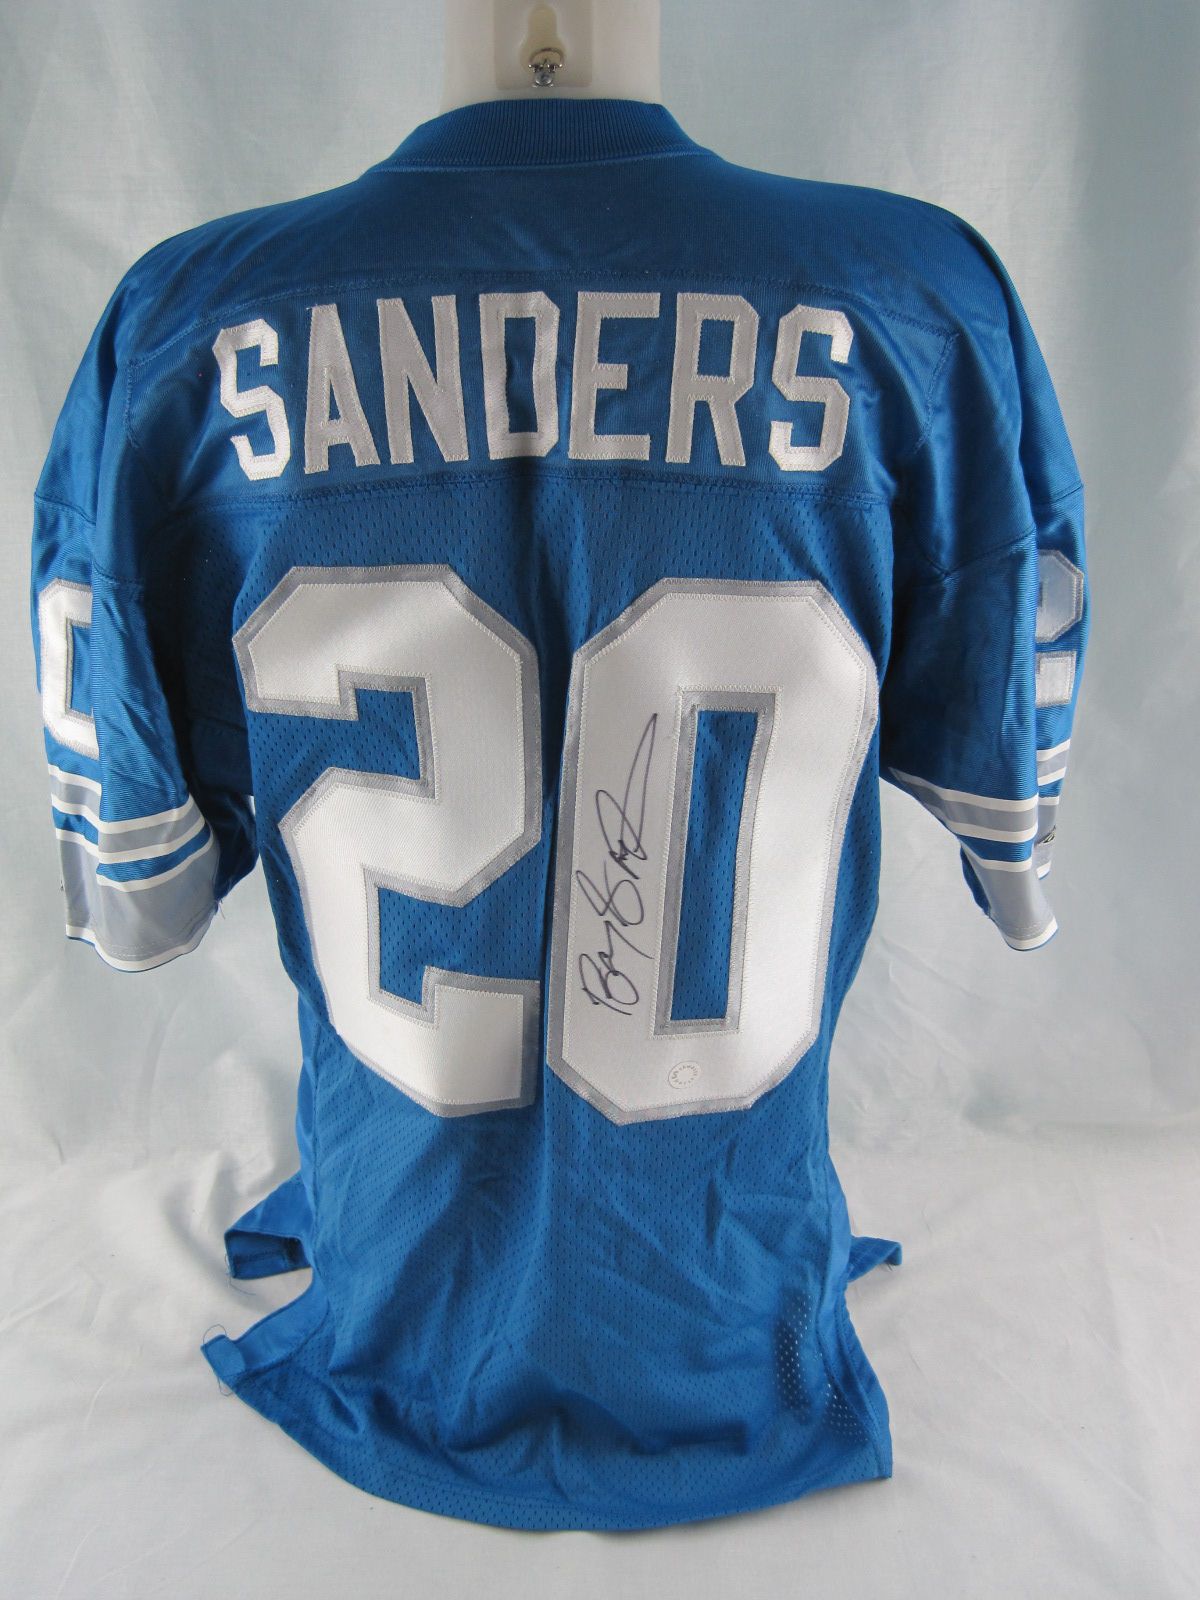 1994 barry sanders jersey